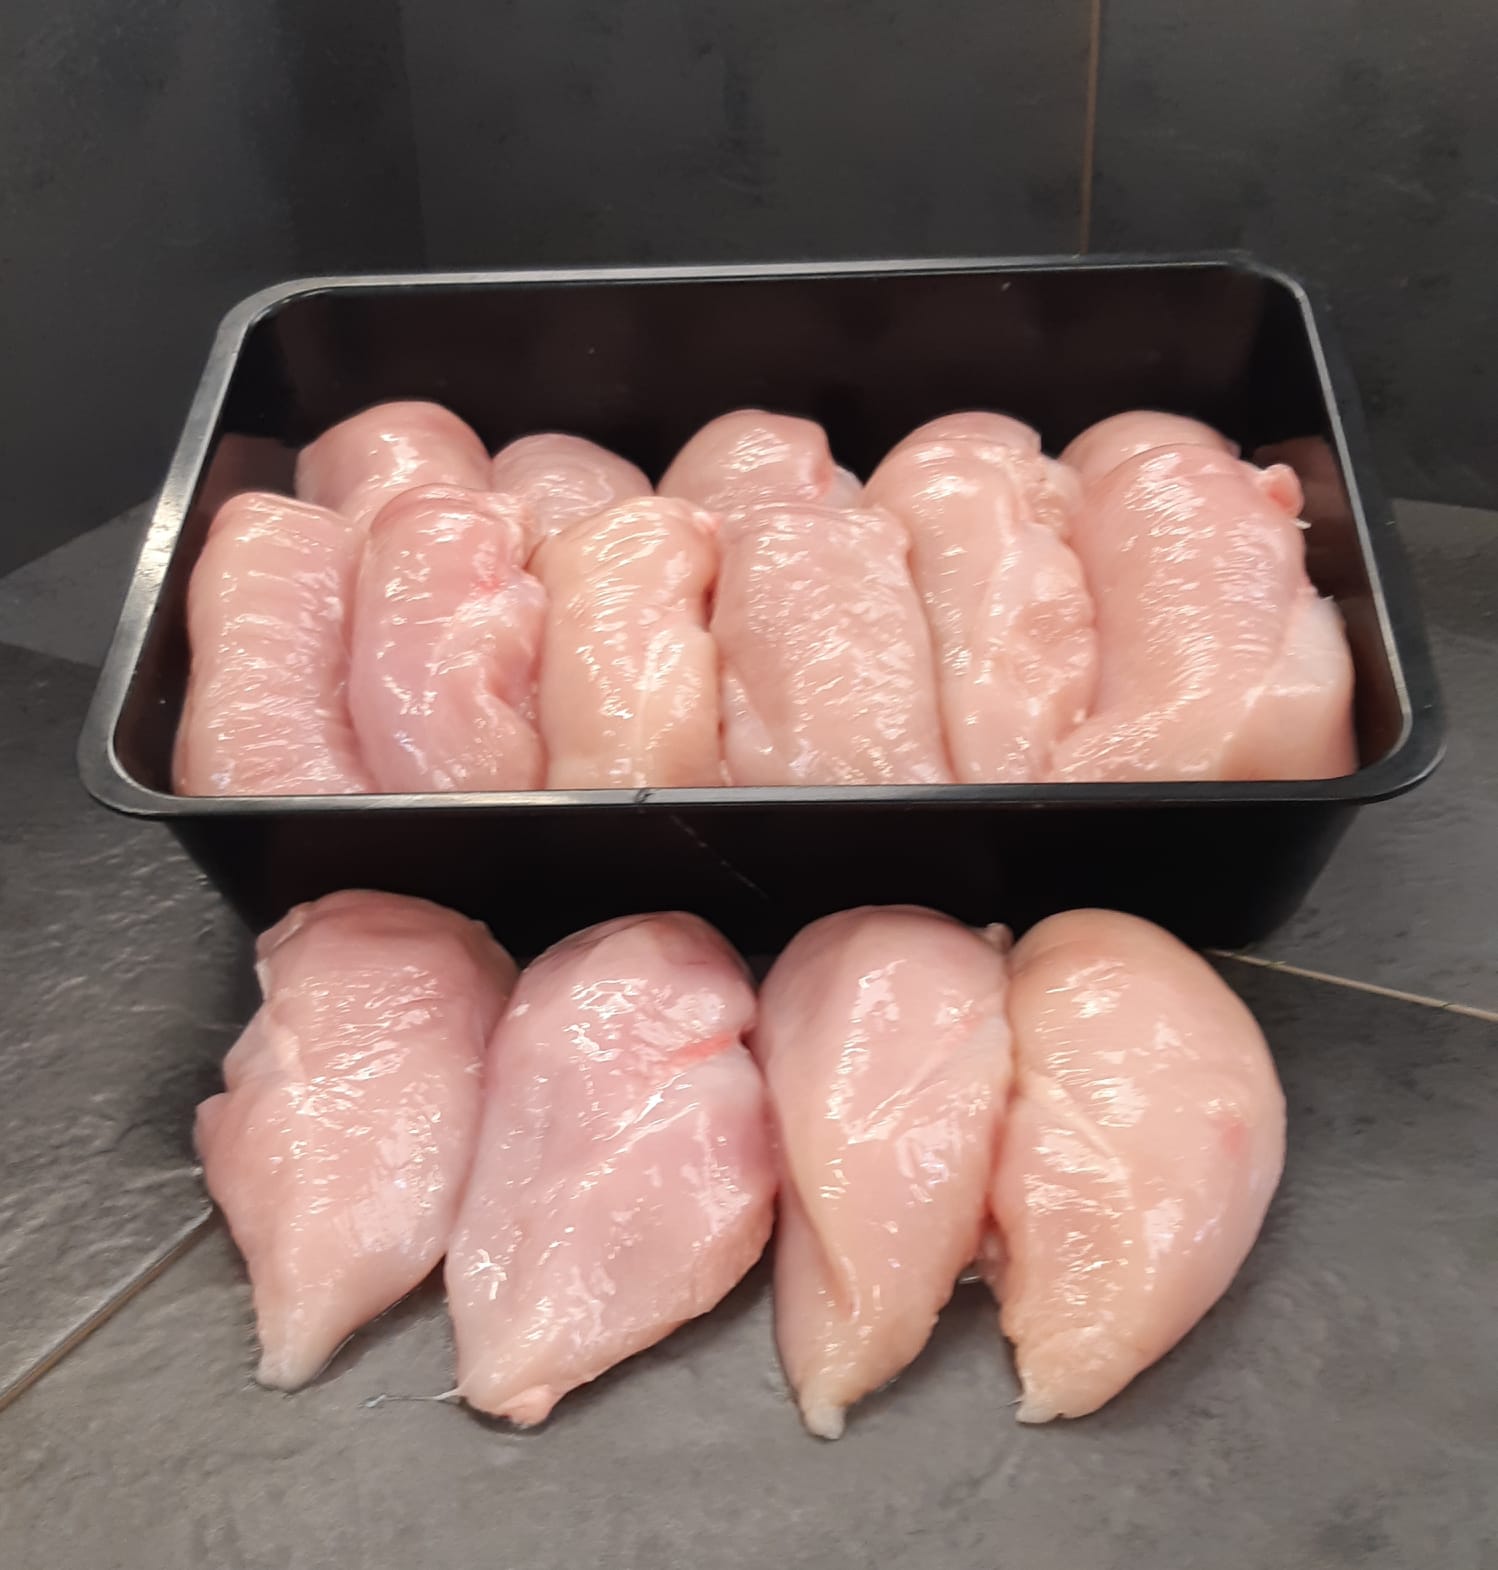 5kg Chicken Fillets, Order Online Today